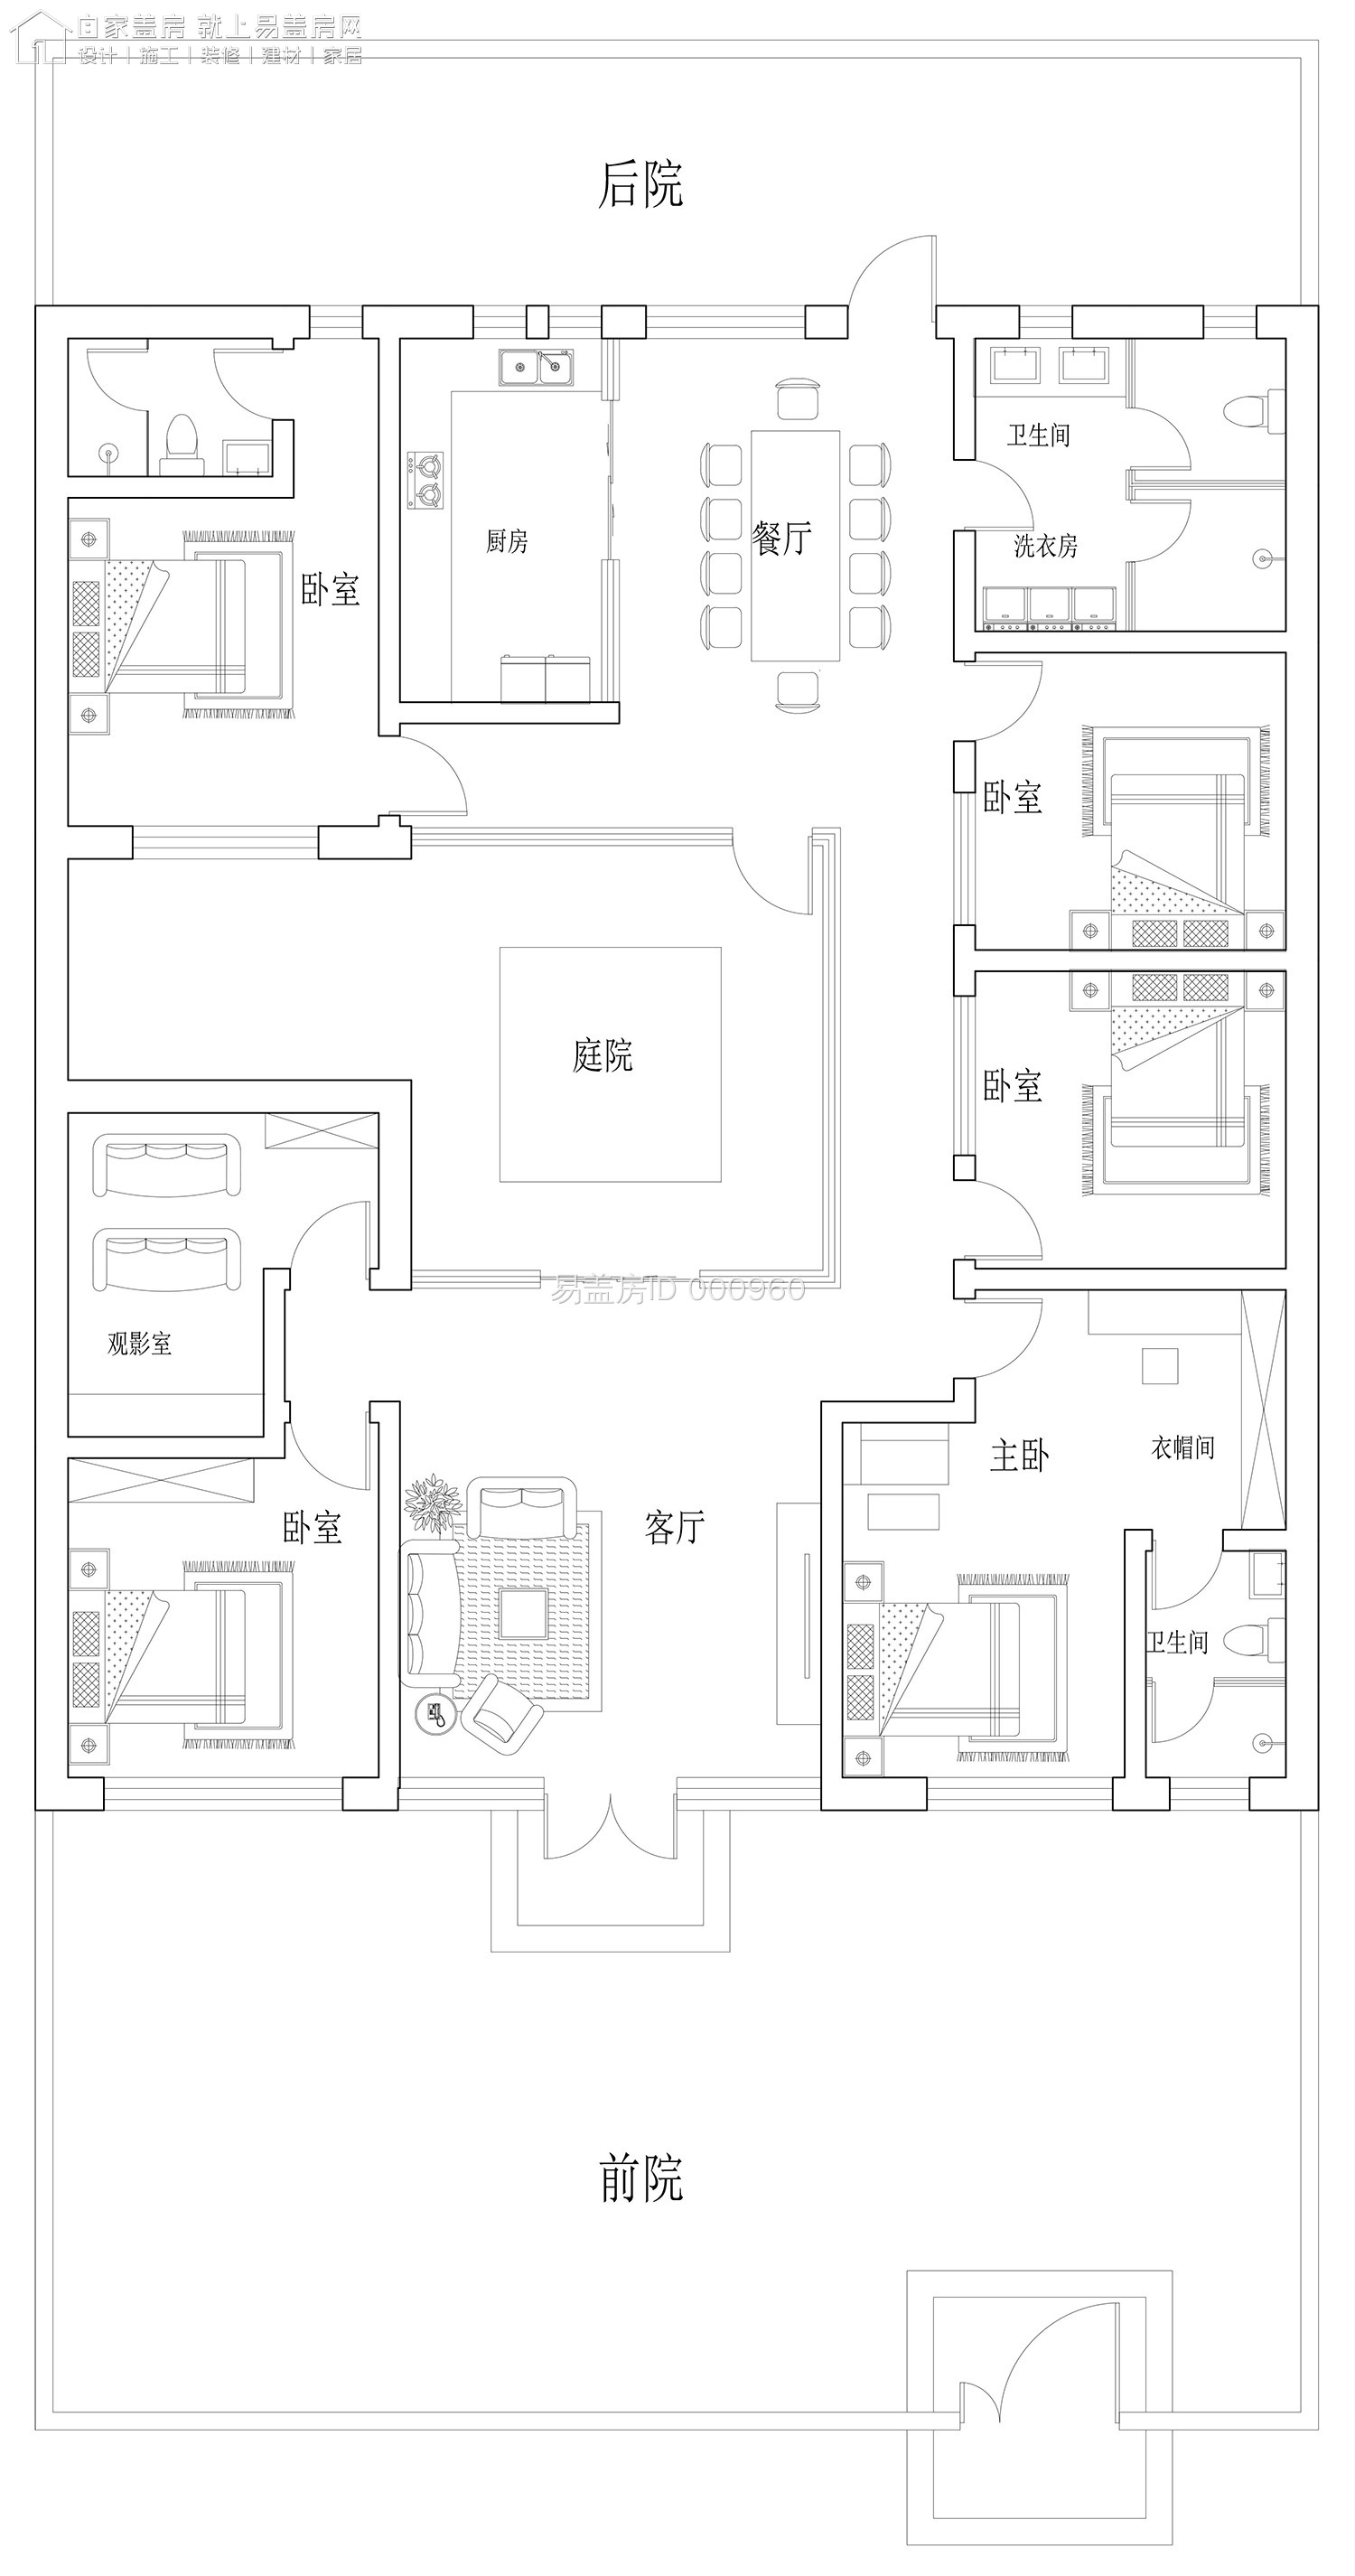 20190102.张仁凯住宅平面图-Model_1.jpg